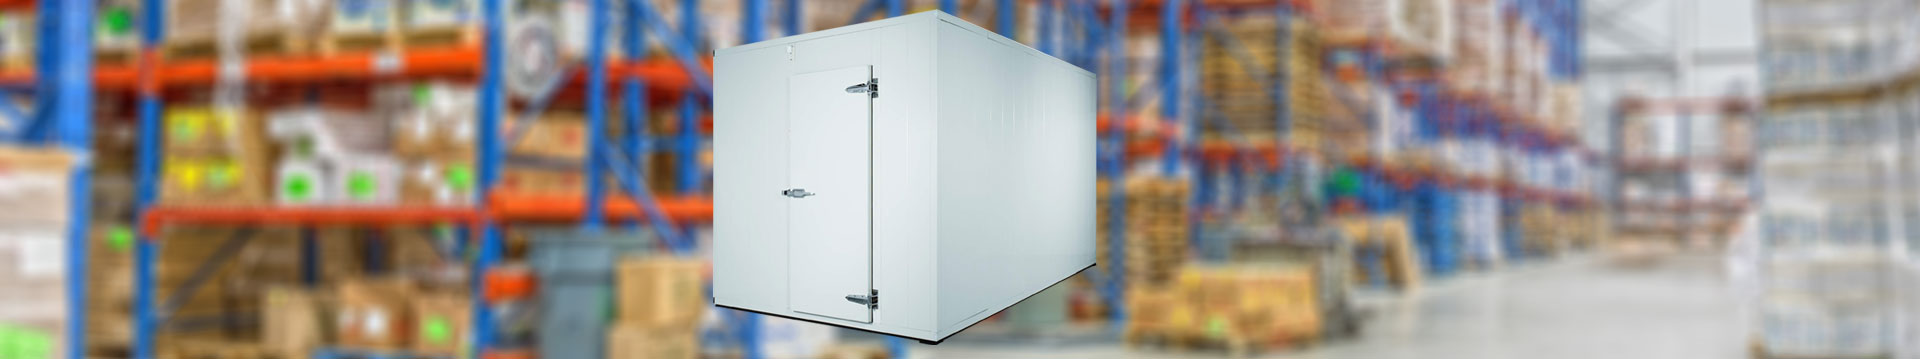 Spilt Unit | Refrigeration Unit For Cold Room